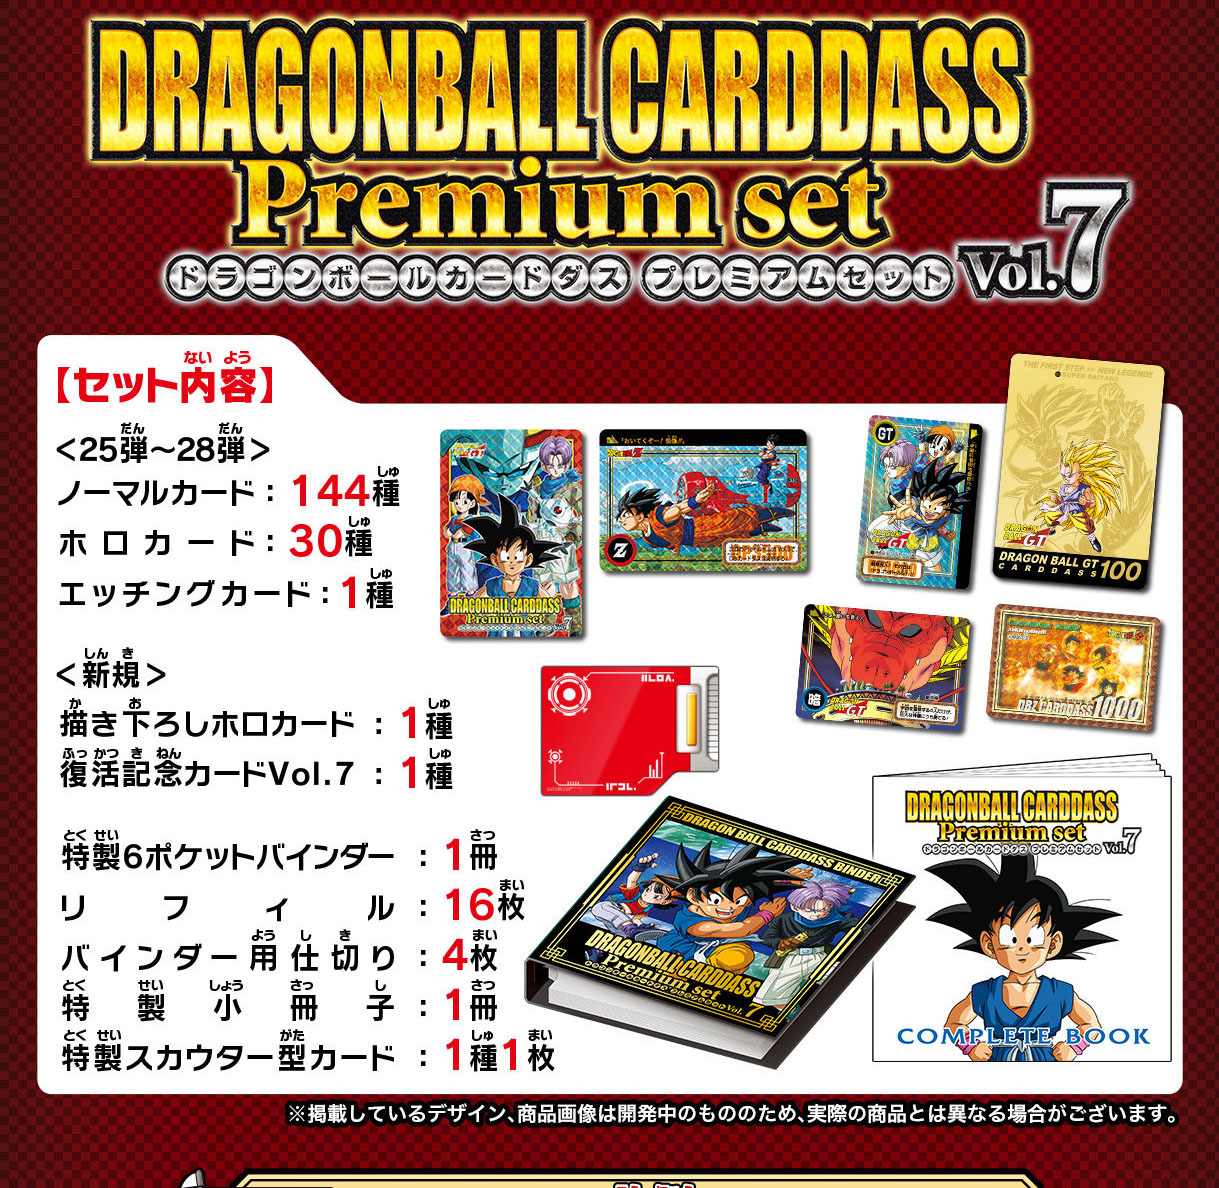 カードダス世代必見！】ドラゴンボールカードダス Premium set Vol.7 